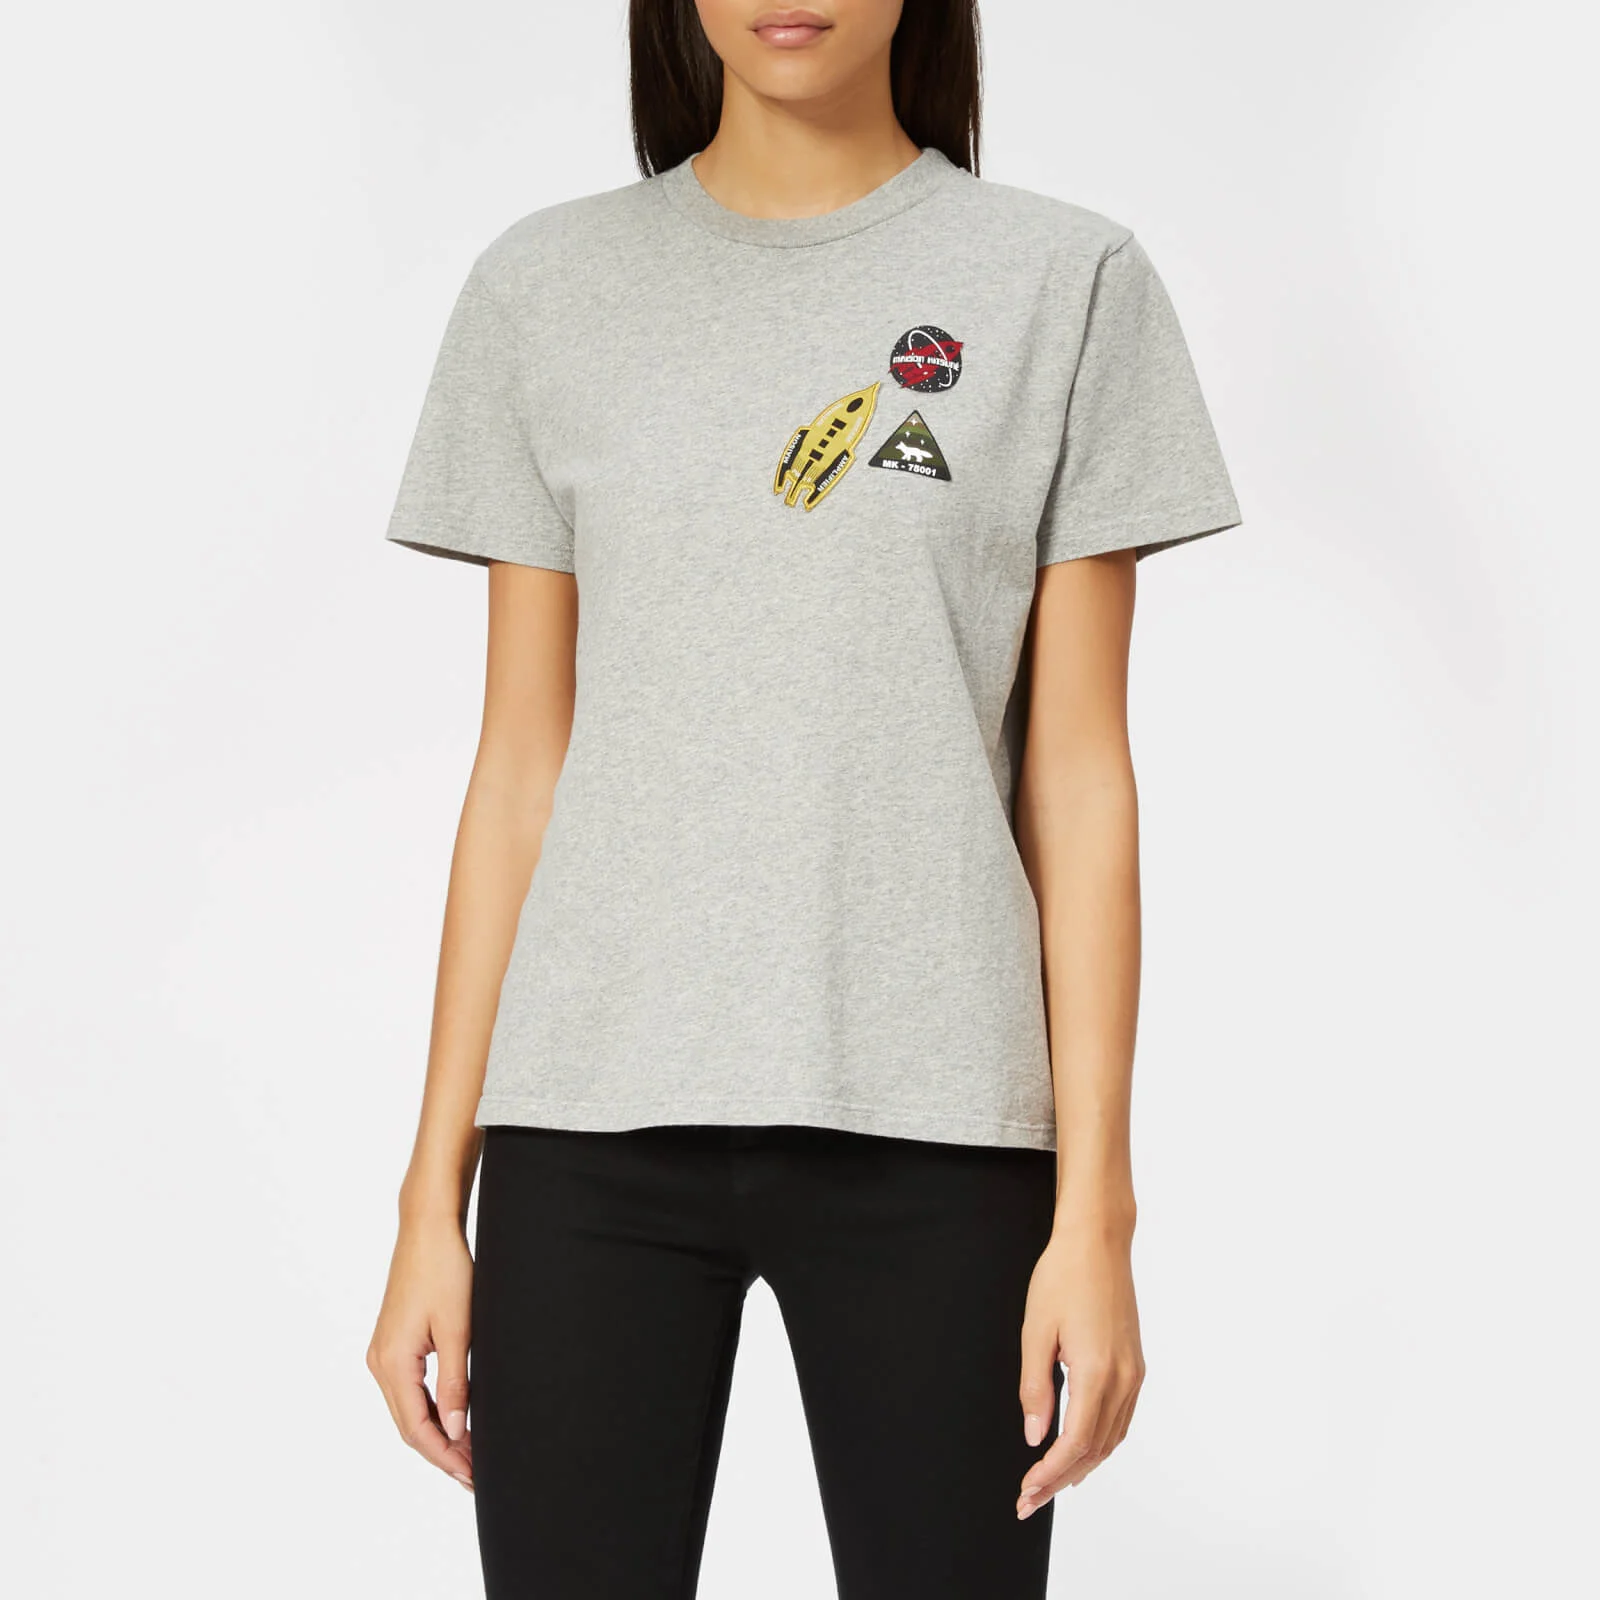 Maison Kitsuné Women's Astronaut Patch T-Shirt - Grey Melange Image 1